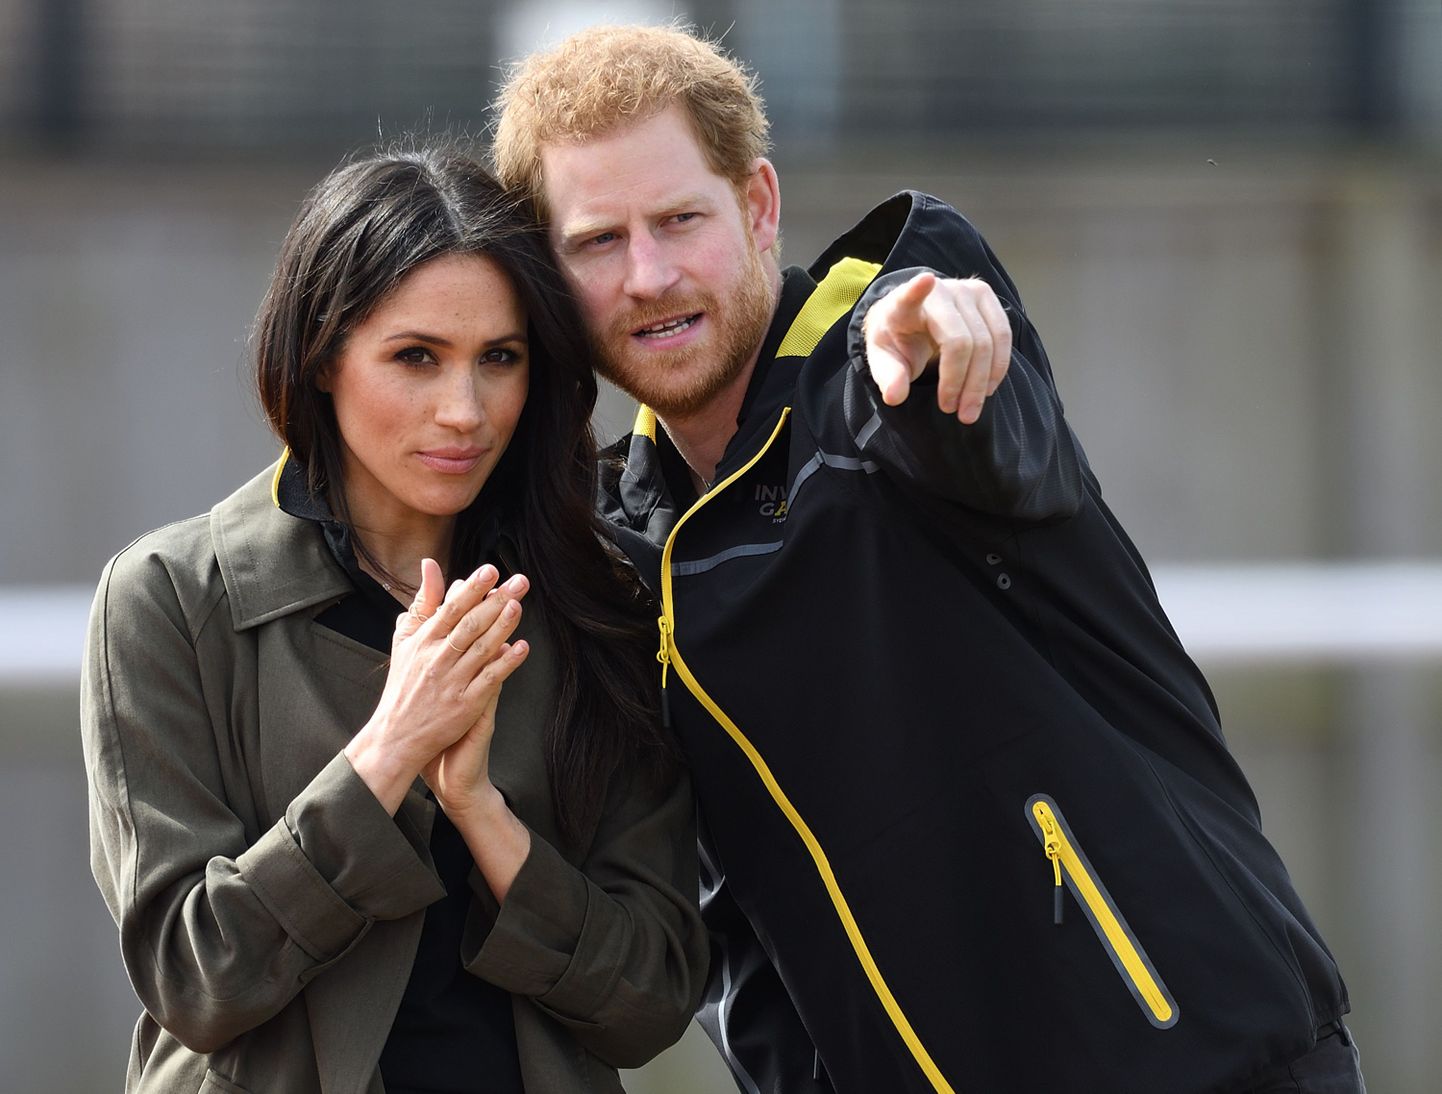 Prints Harry ja tema abikaasa Meghan 2018. aastal jälgimas Võitmatute mängudel (Invictus Games) osalejate treeninguid.